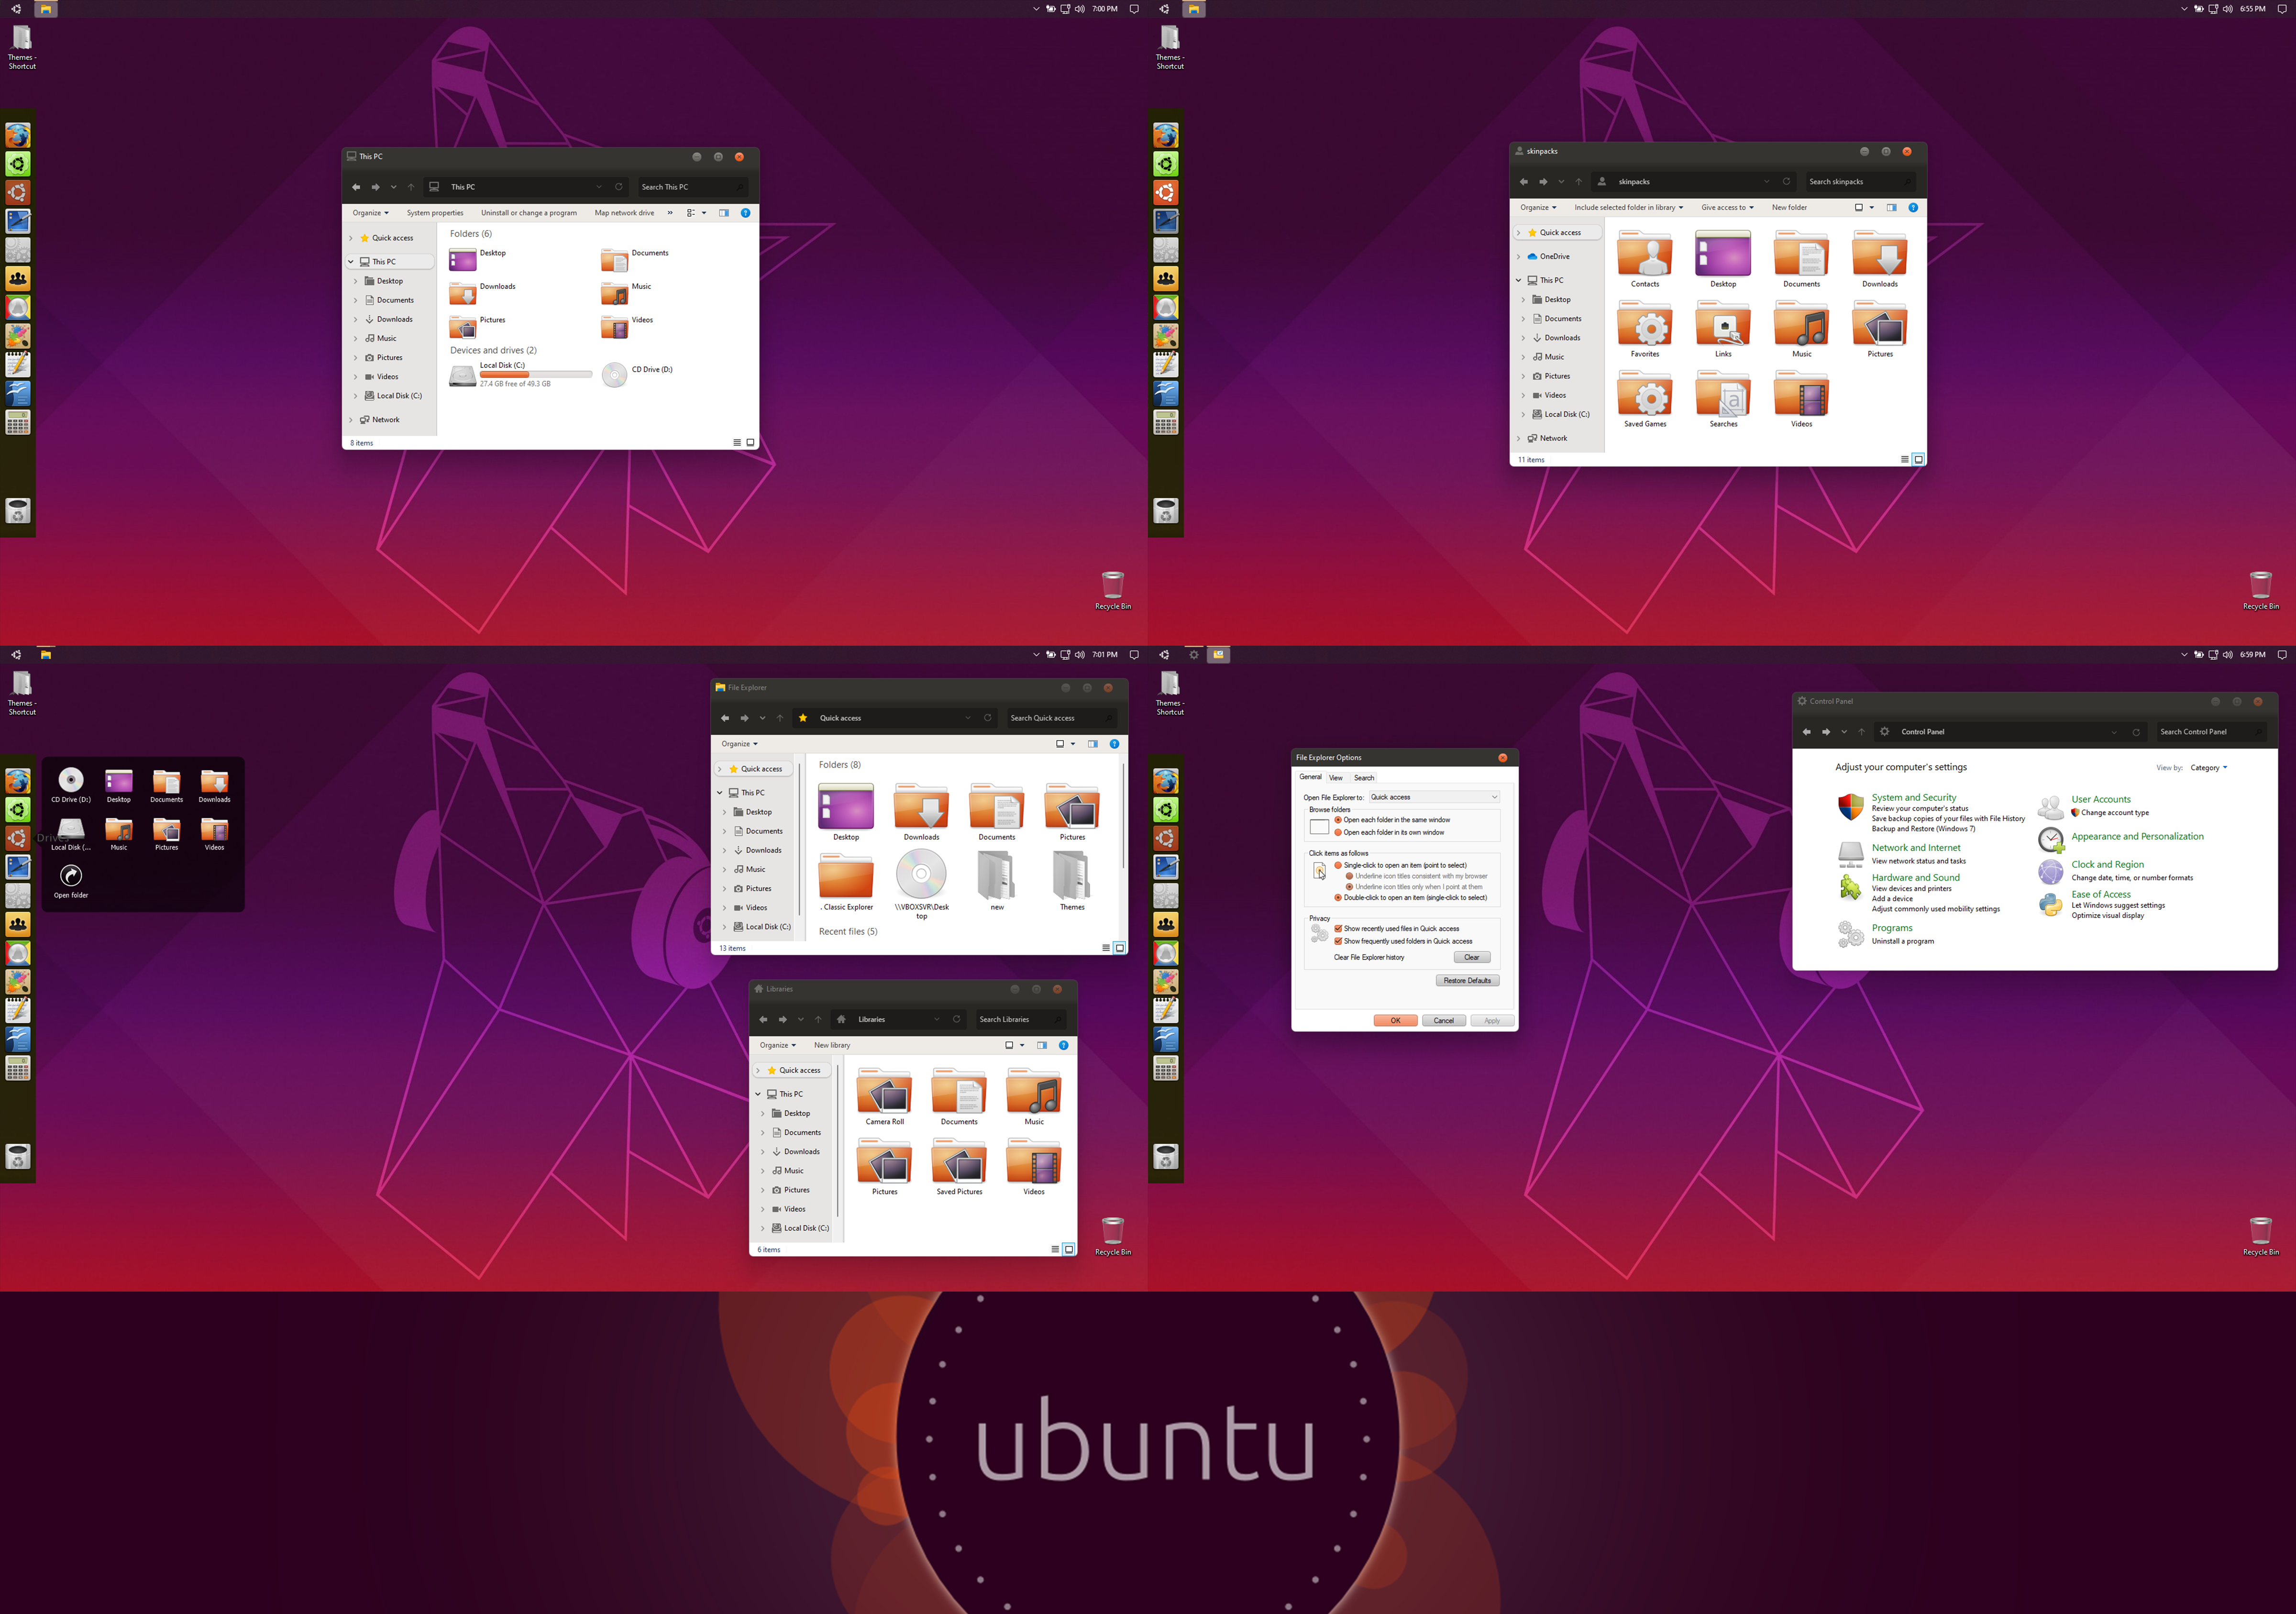 Some interesting Ubuntu themes and icons